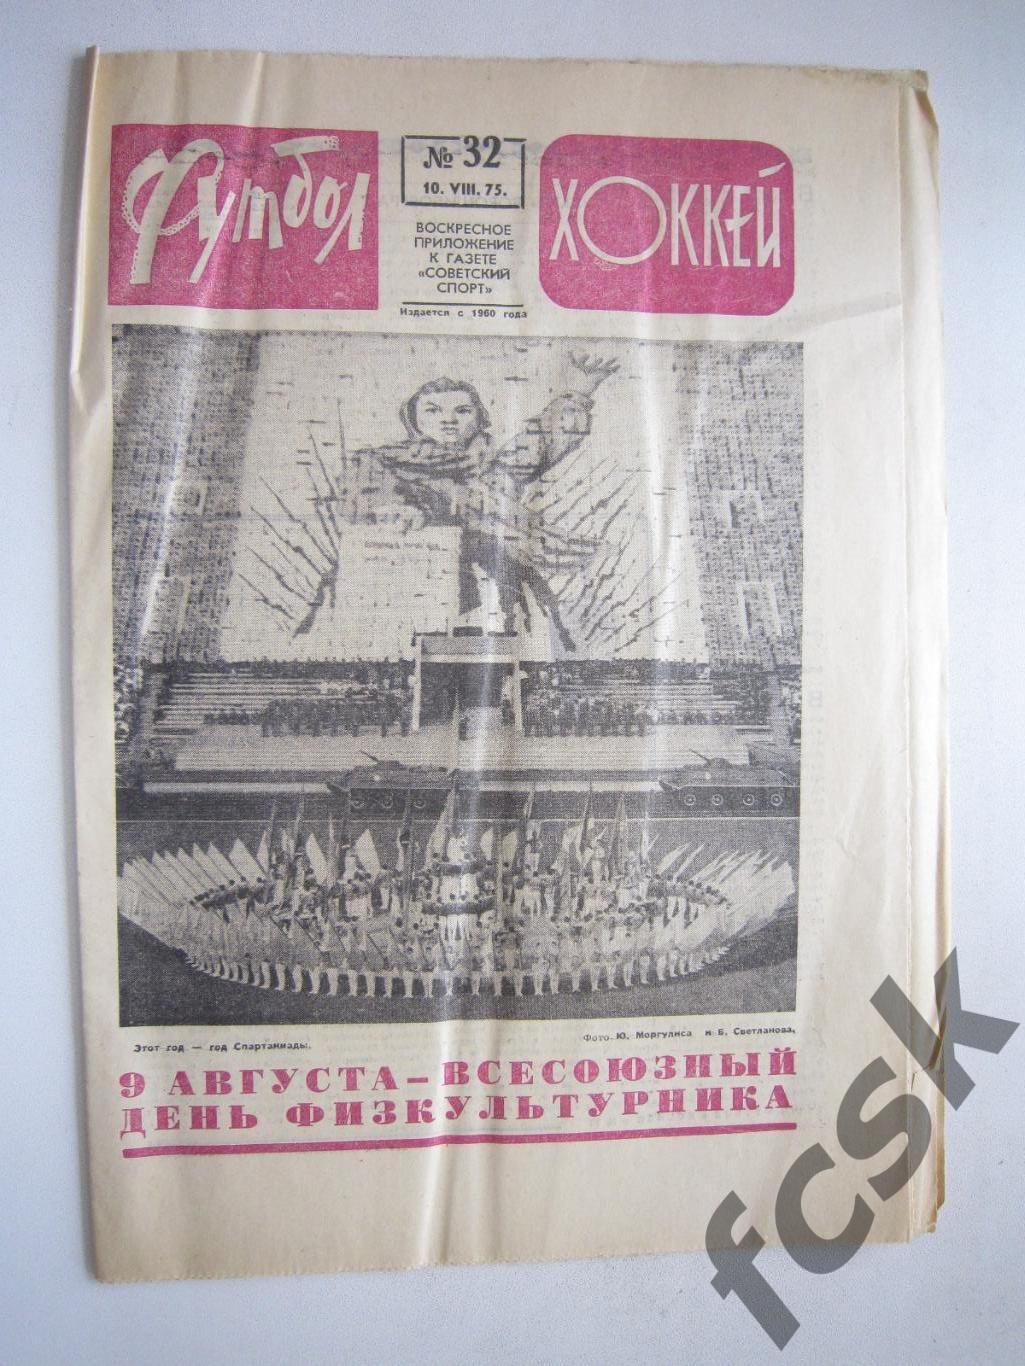 Еженедельник Футбол-Хоккей 1975 № 32 Московская правда (АВ-1)